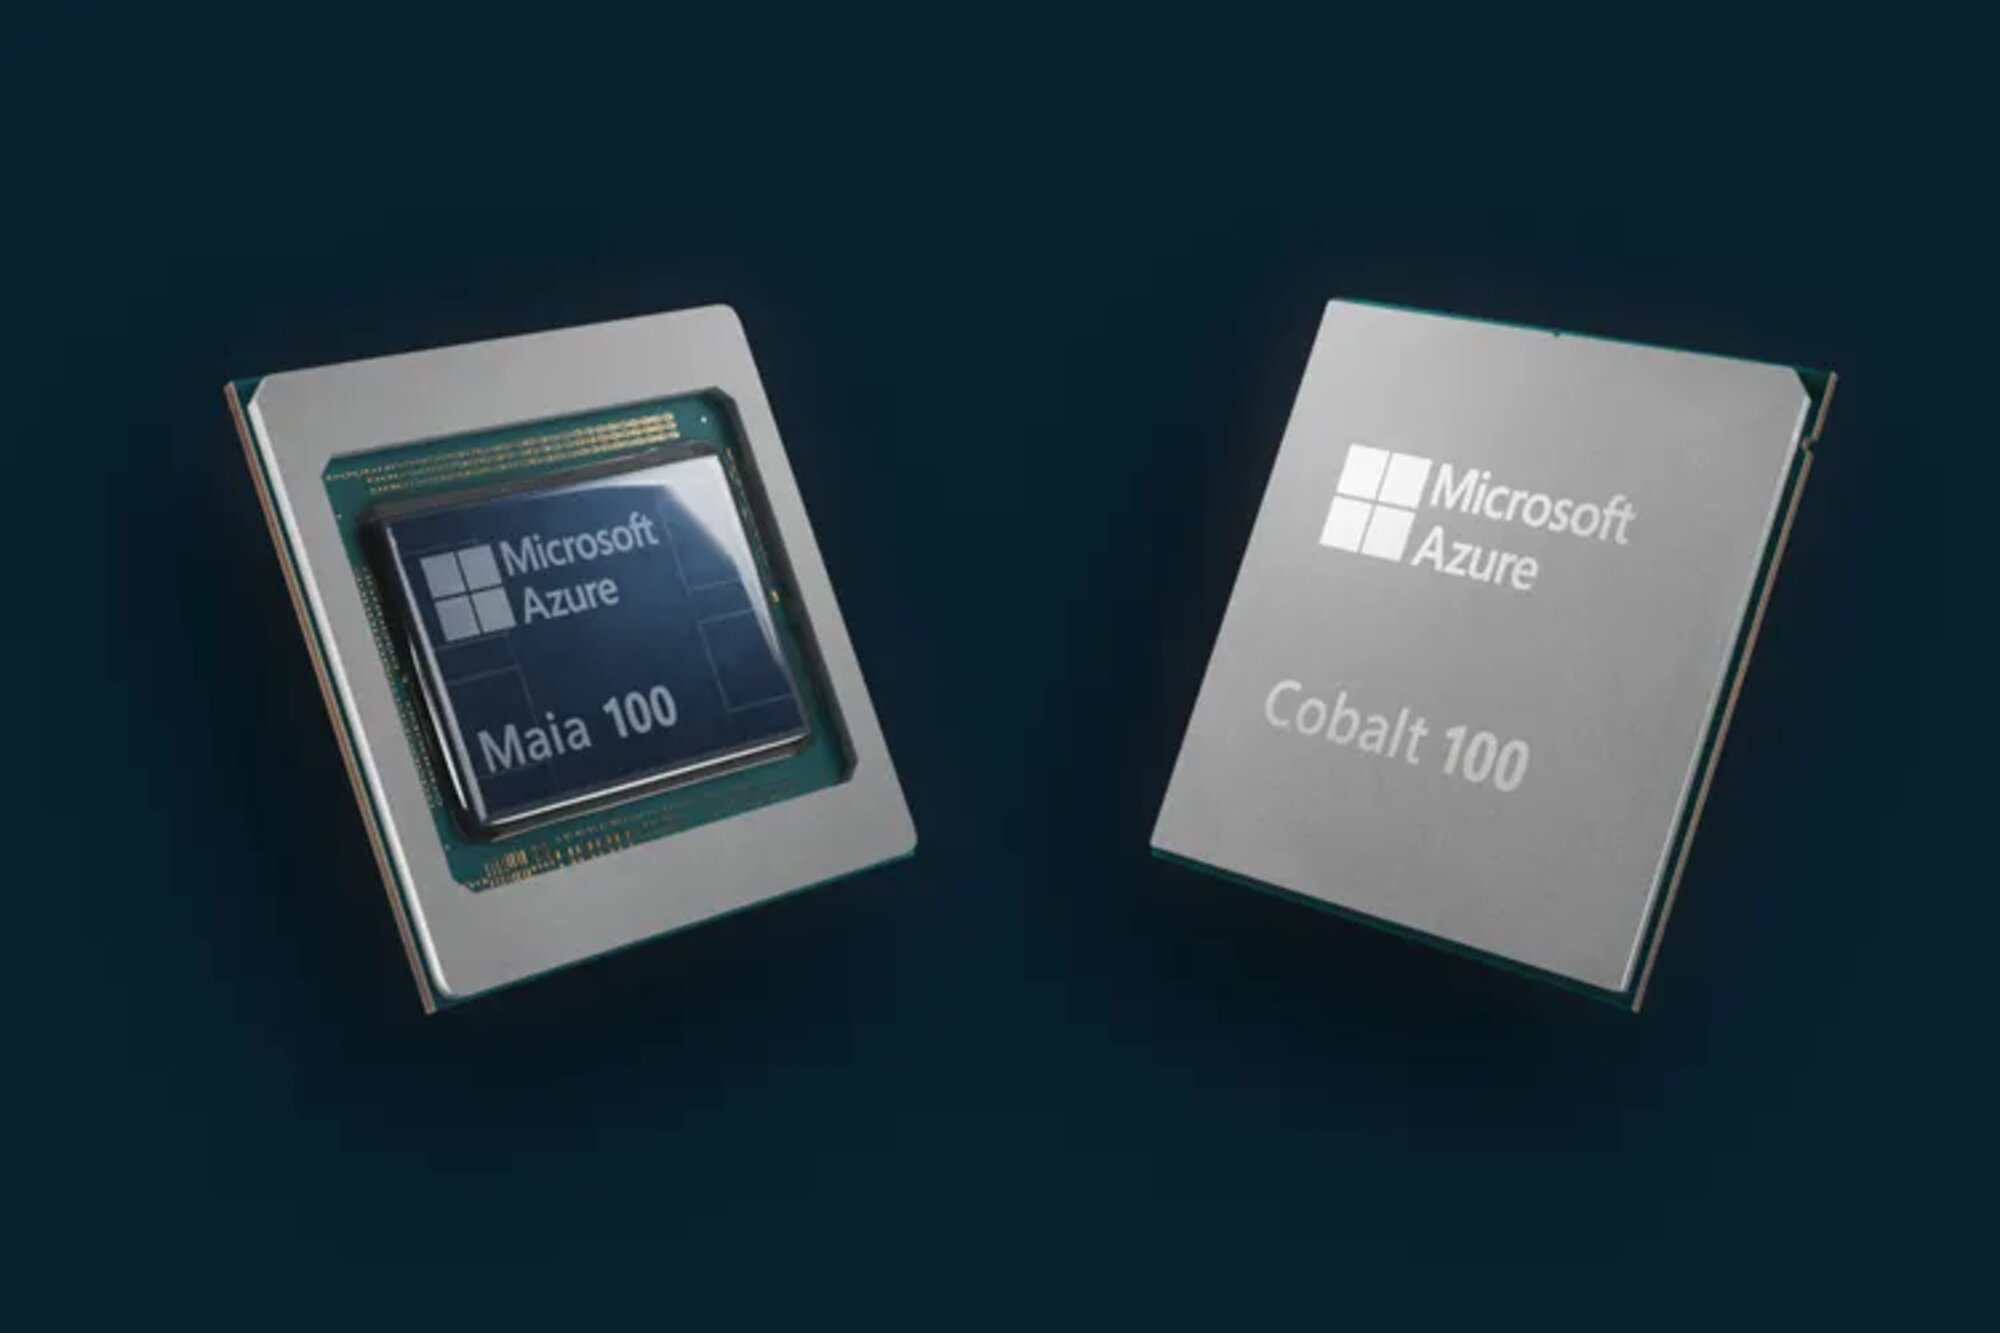 La rumeur était donc vraie ! Microsoft va à son tour produire ses propres CPU et GPU, Cobalt et Maia